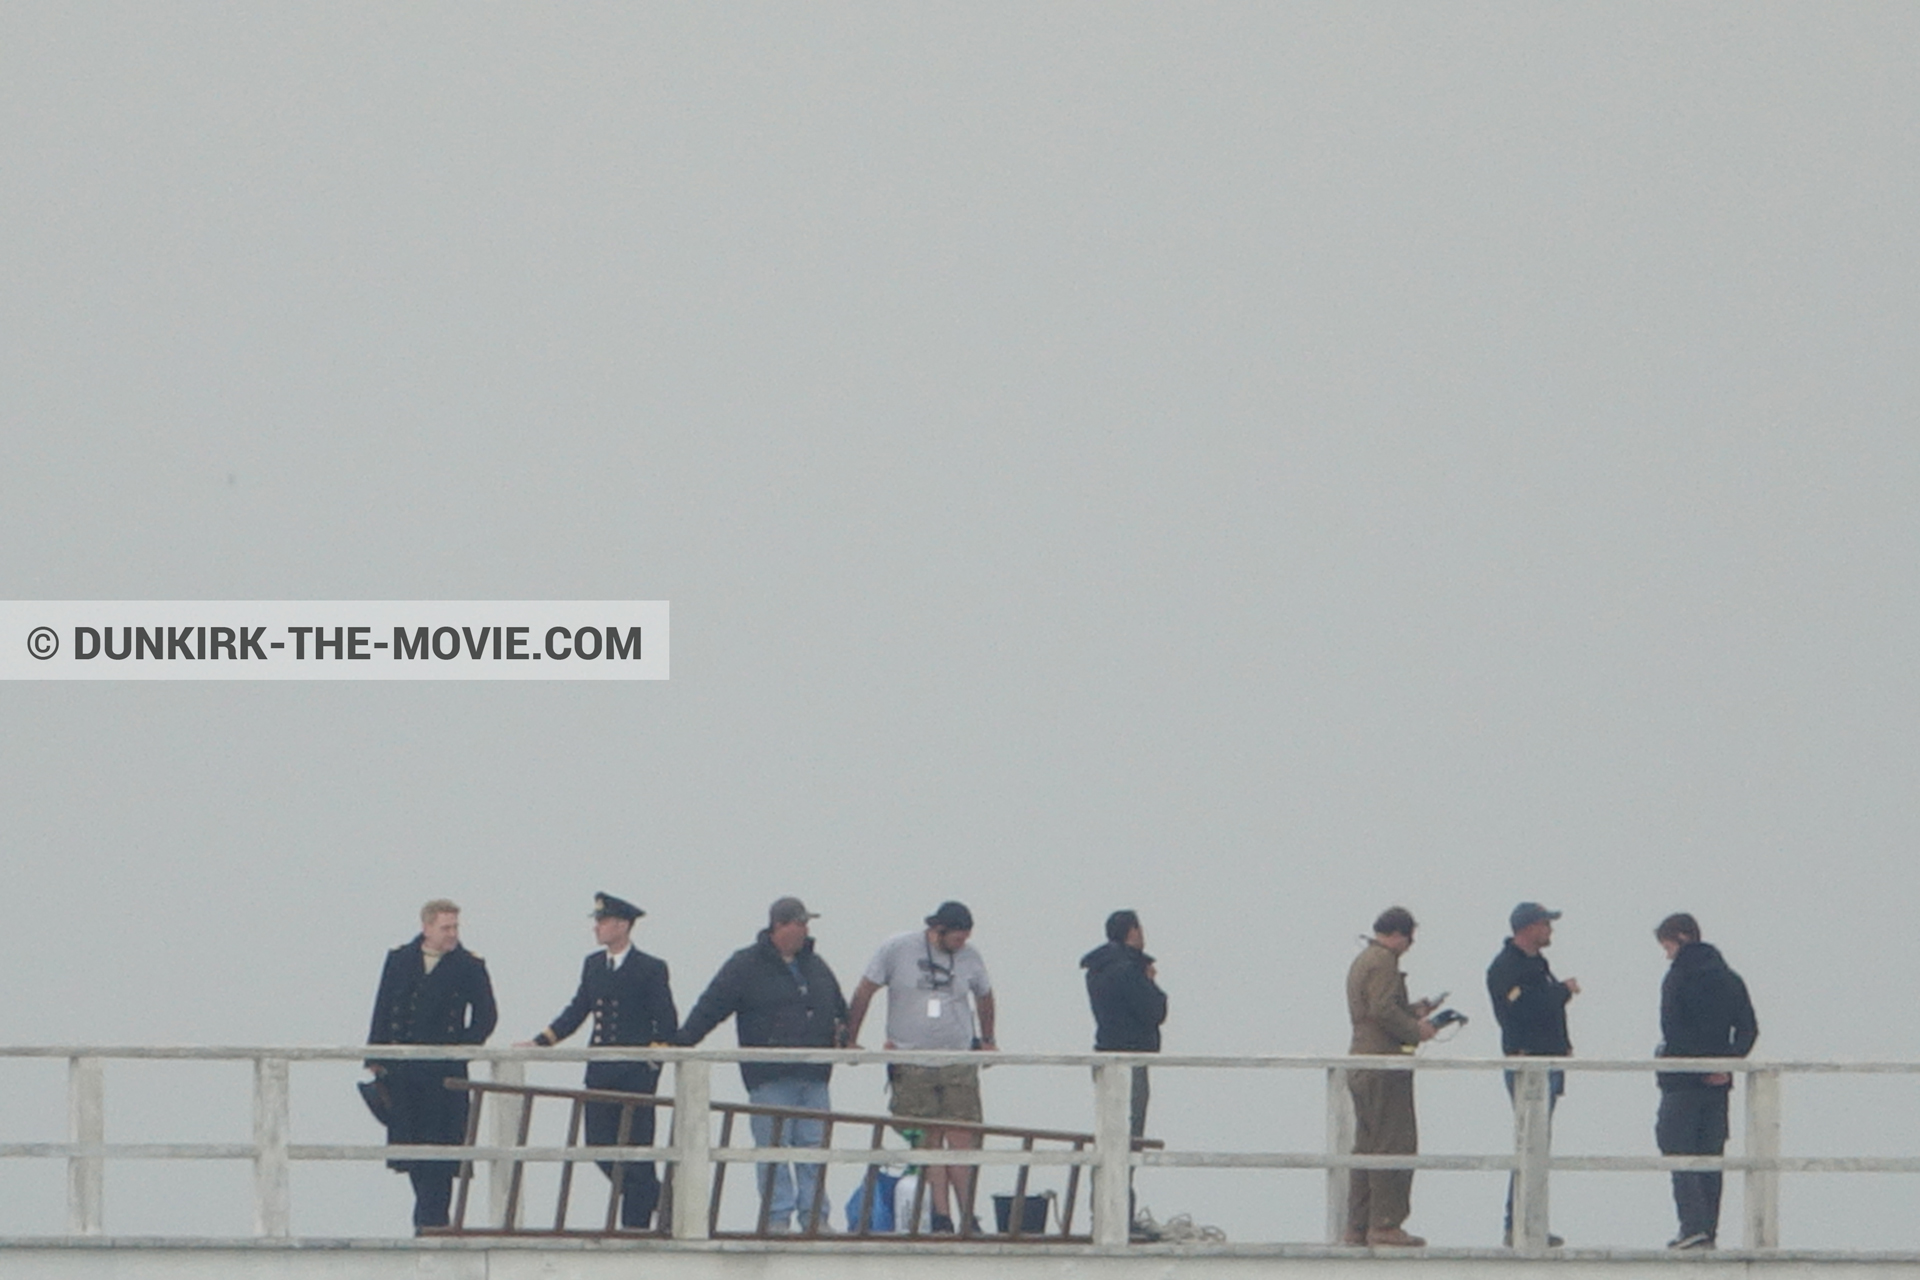 Photo avec acteur, ciel gris, jetée EST, Kenneth Branagh, équipe technique,  des dessous du Film Dunkerque de Nolan